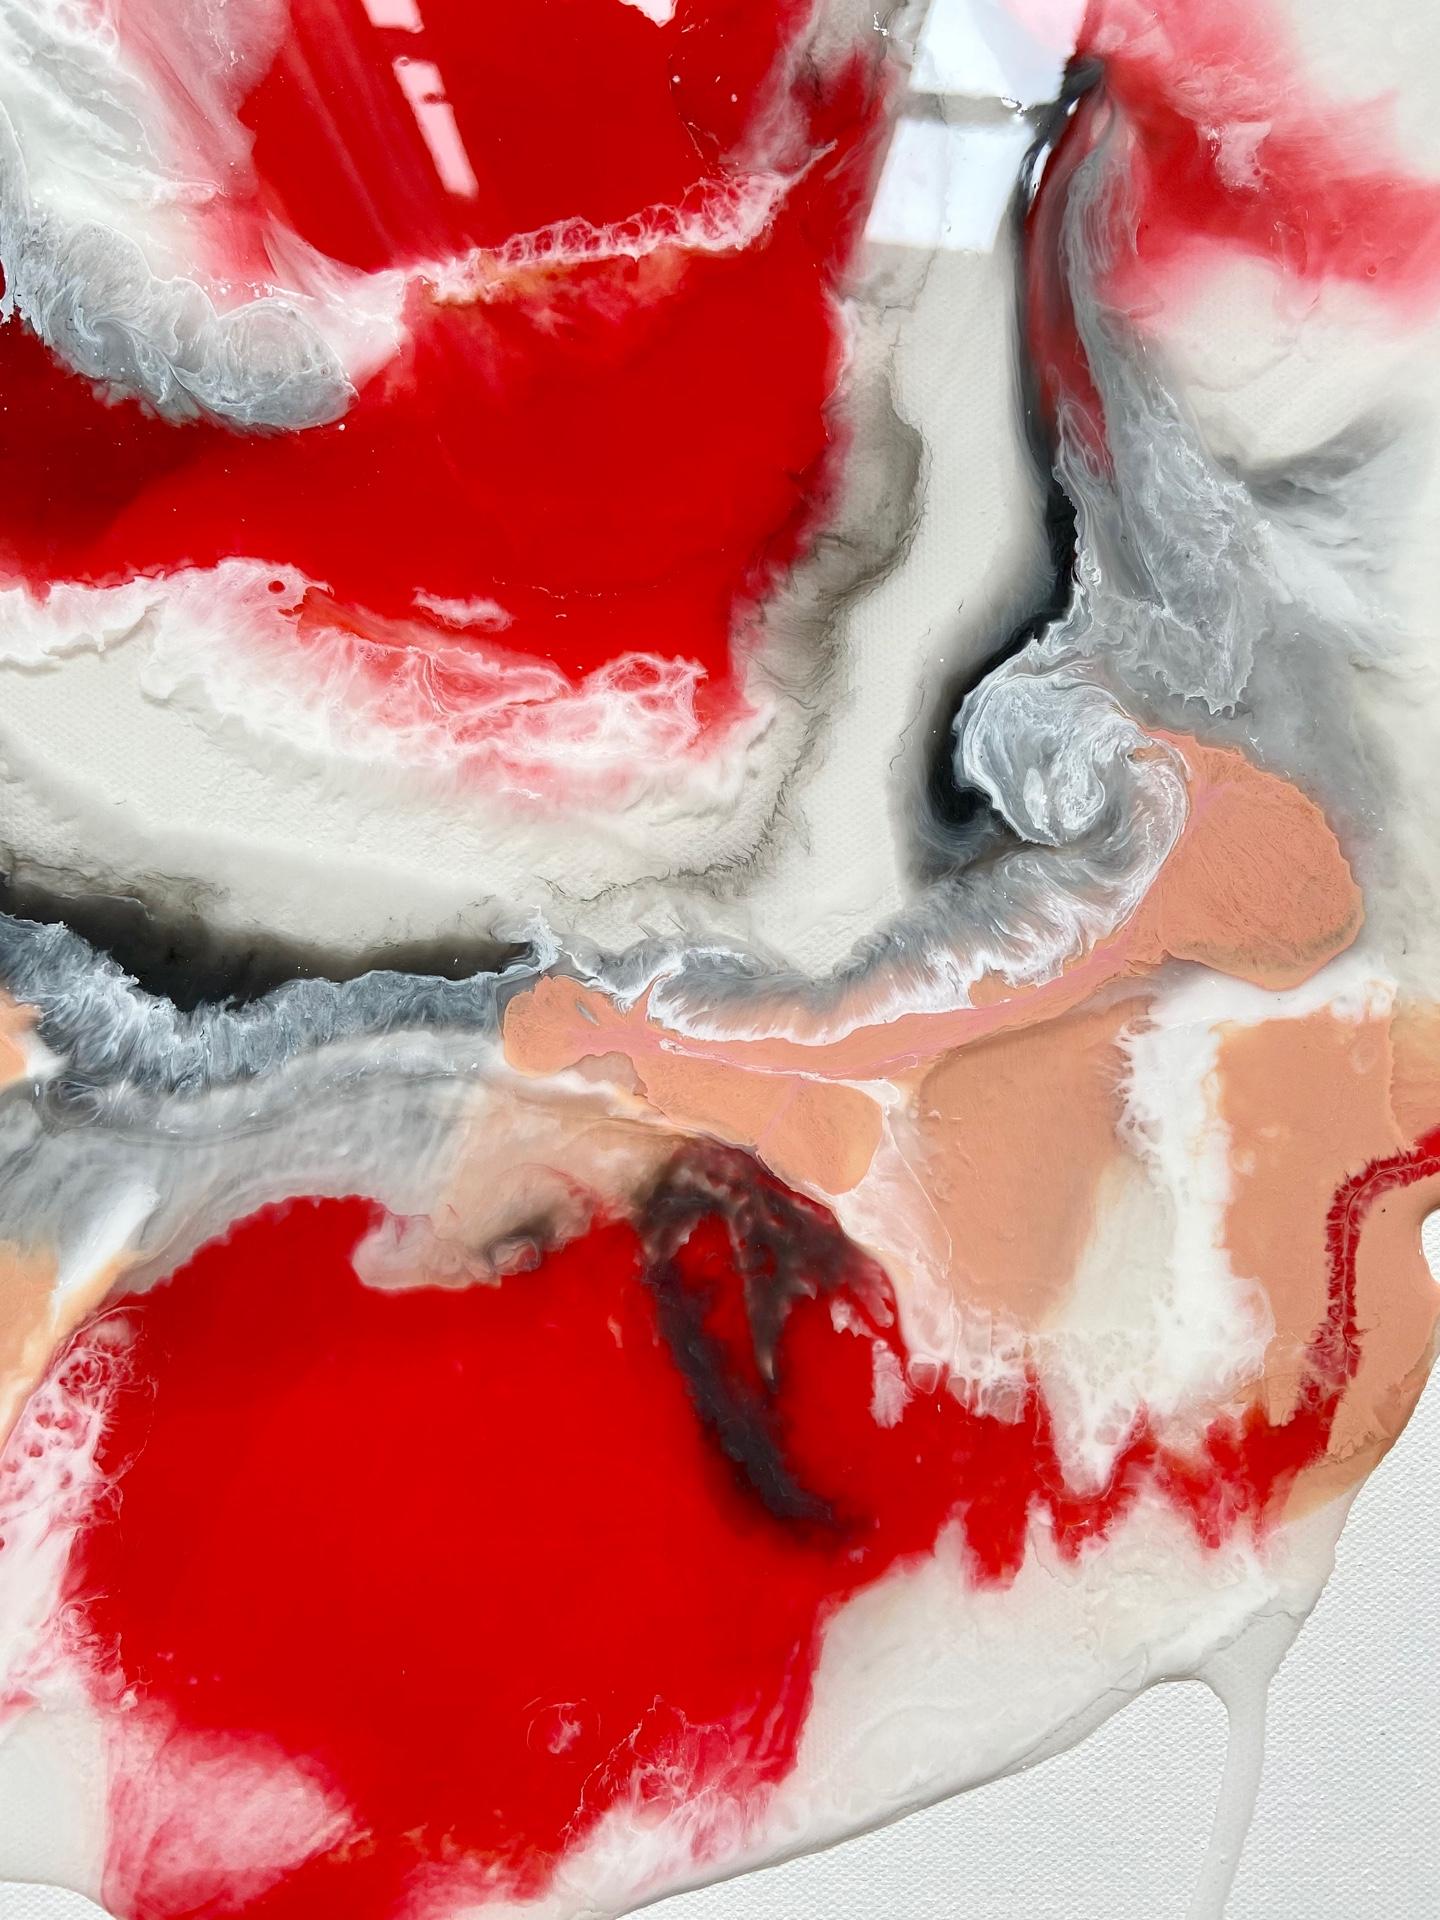 Man's Heart (Cœur humain) - peinture abstraite en rouge, noir, blanc, couleur pêche - Painting de Lena Cher